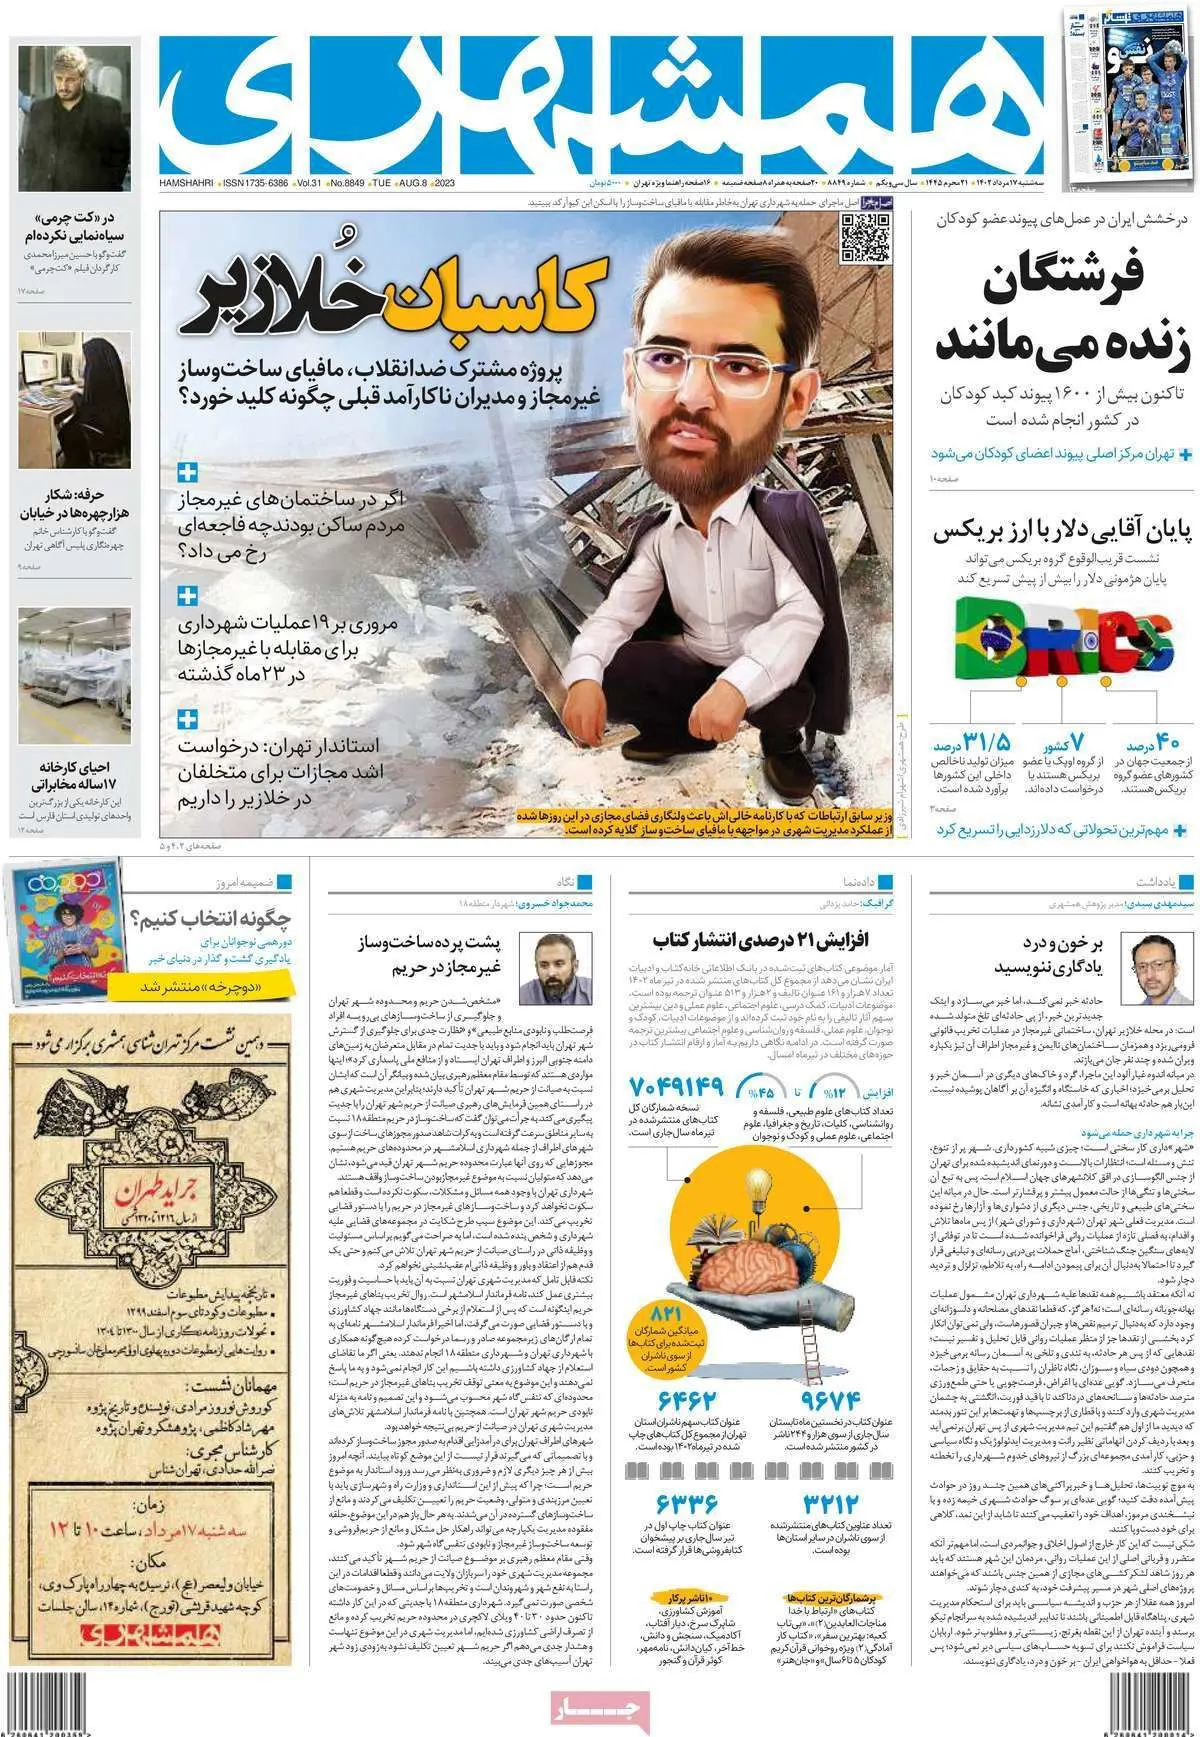 واکنش روزنامه شهرداری به تعبیر "پررویی نجومی" از طرف آذری جهرمی برای زاکانی